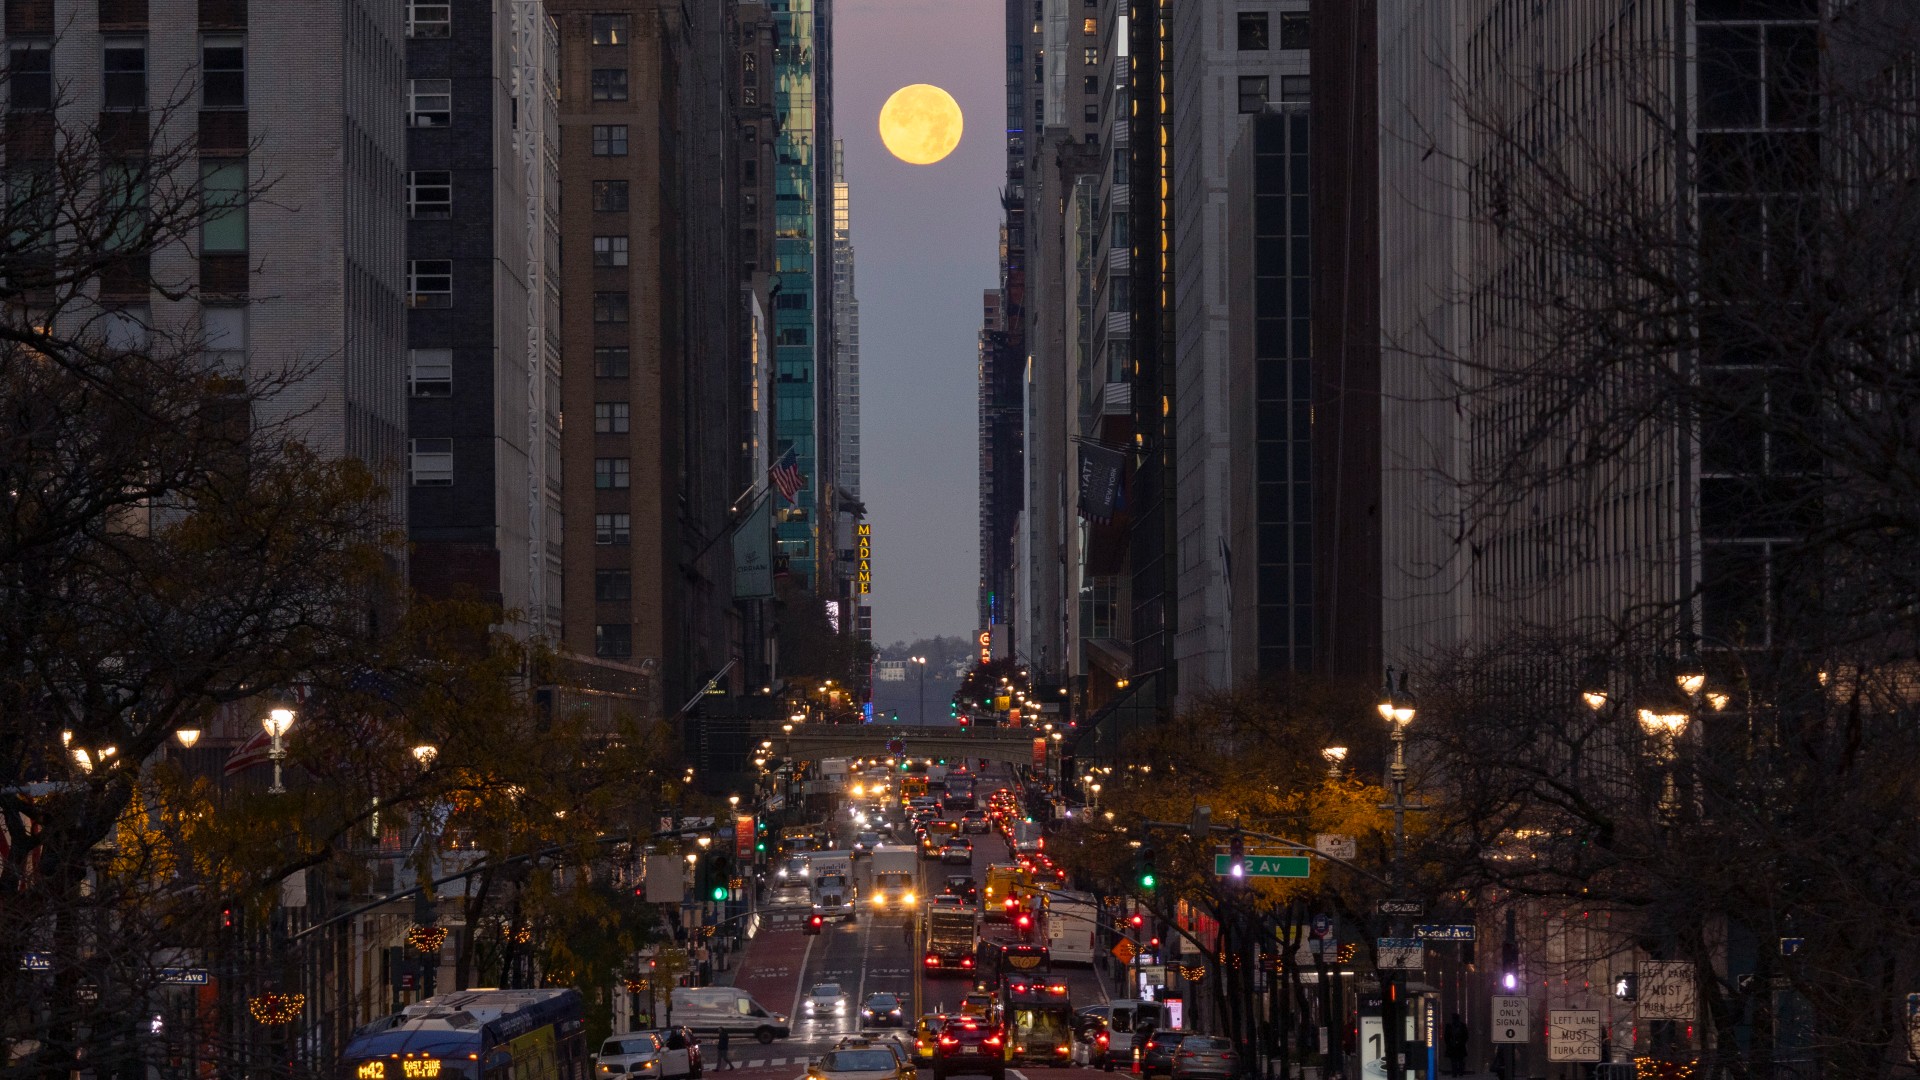 La luna llena se puede ver sobre una calle muy transitada entre dos filas de grandes edificios en una ciudad abarrotada de gente.